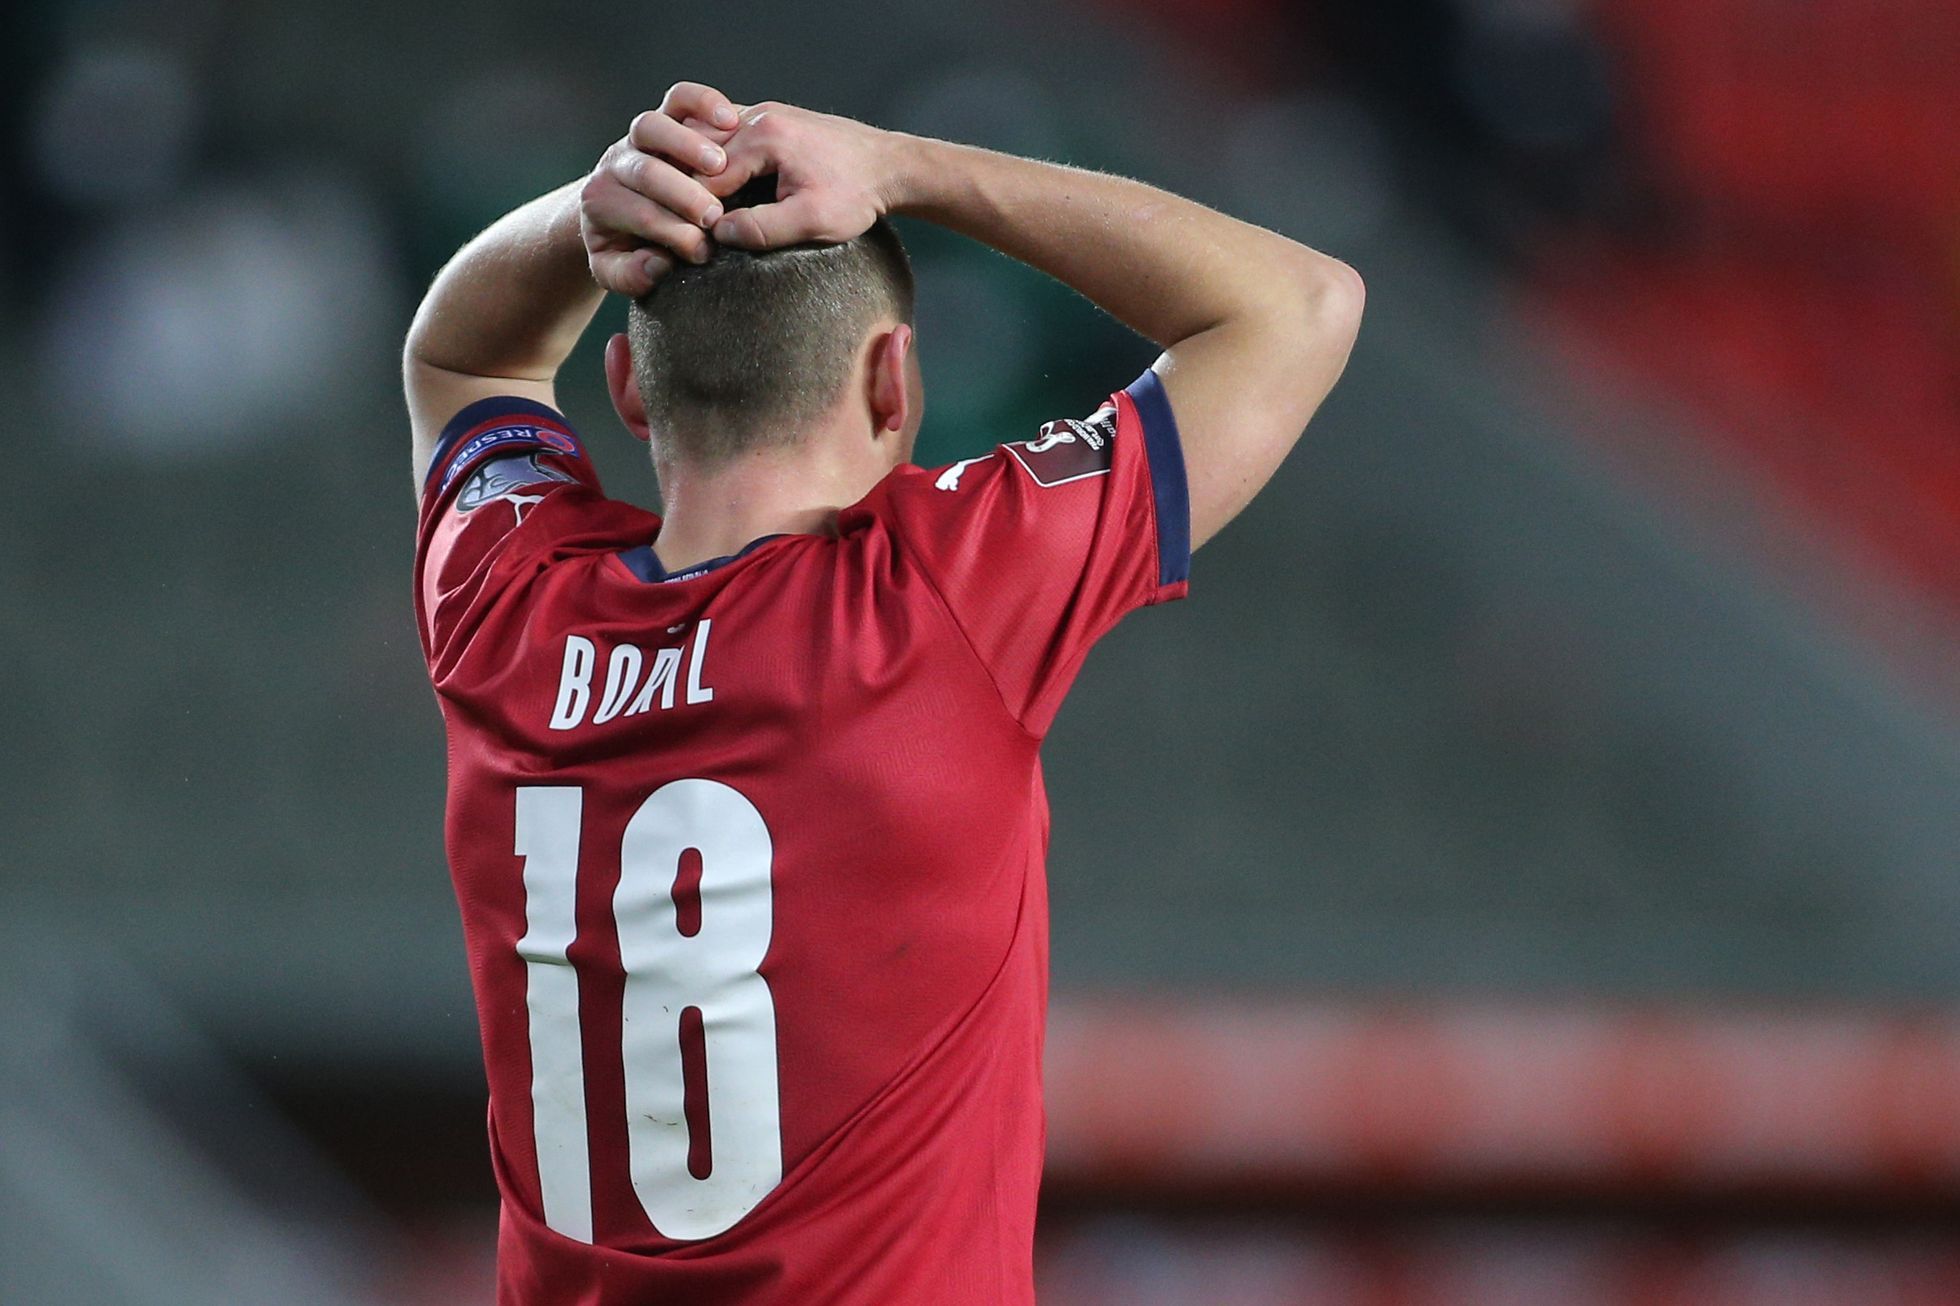 Con l’Albania sarà qualcosa di completamente diverso rispetto all’Italia, crede il calciatore Bořil